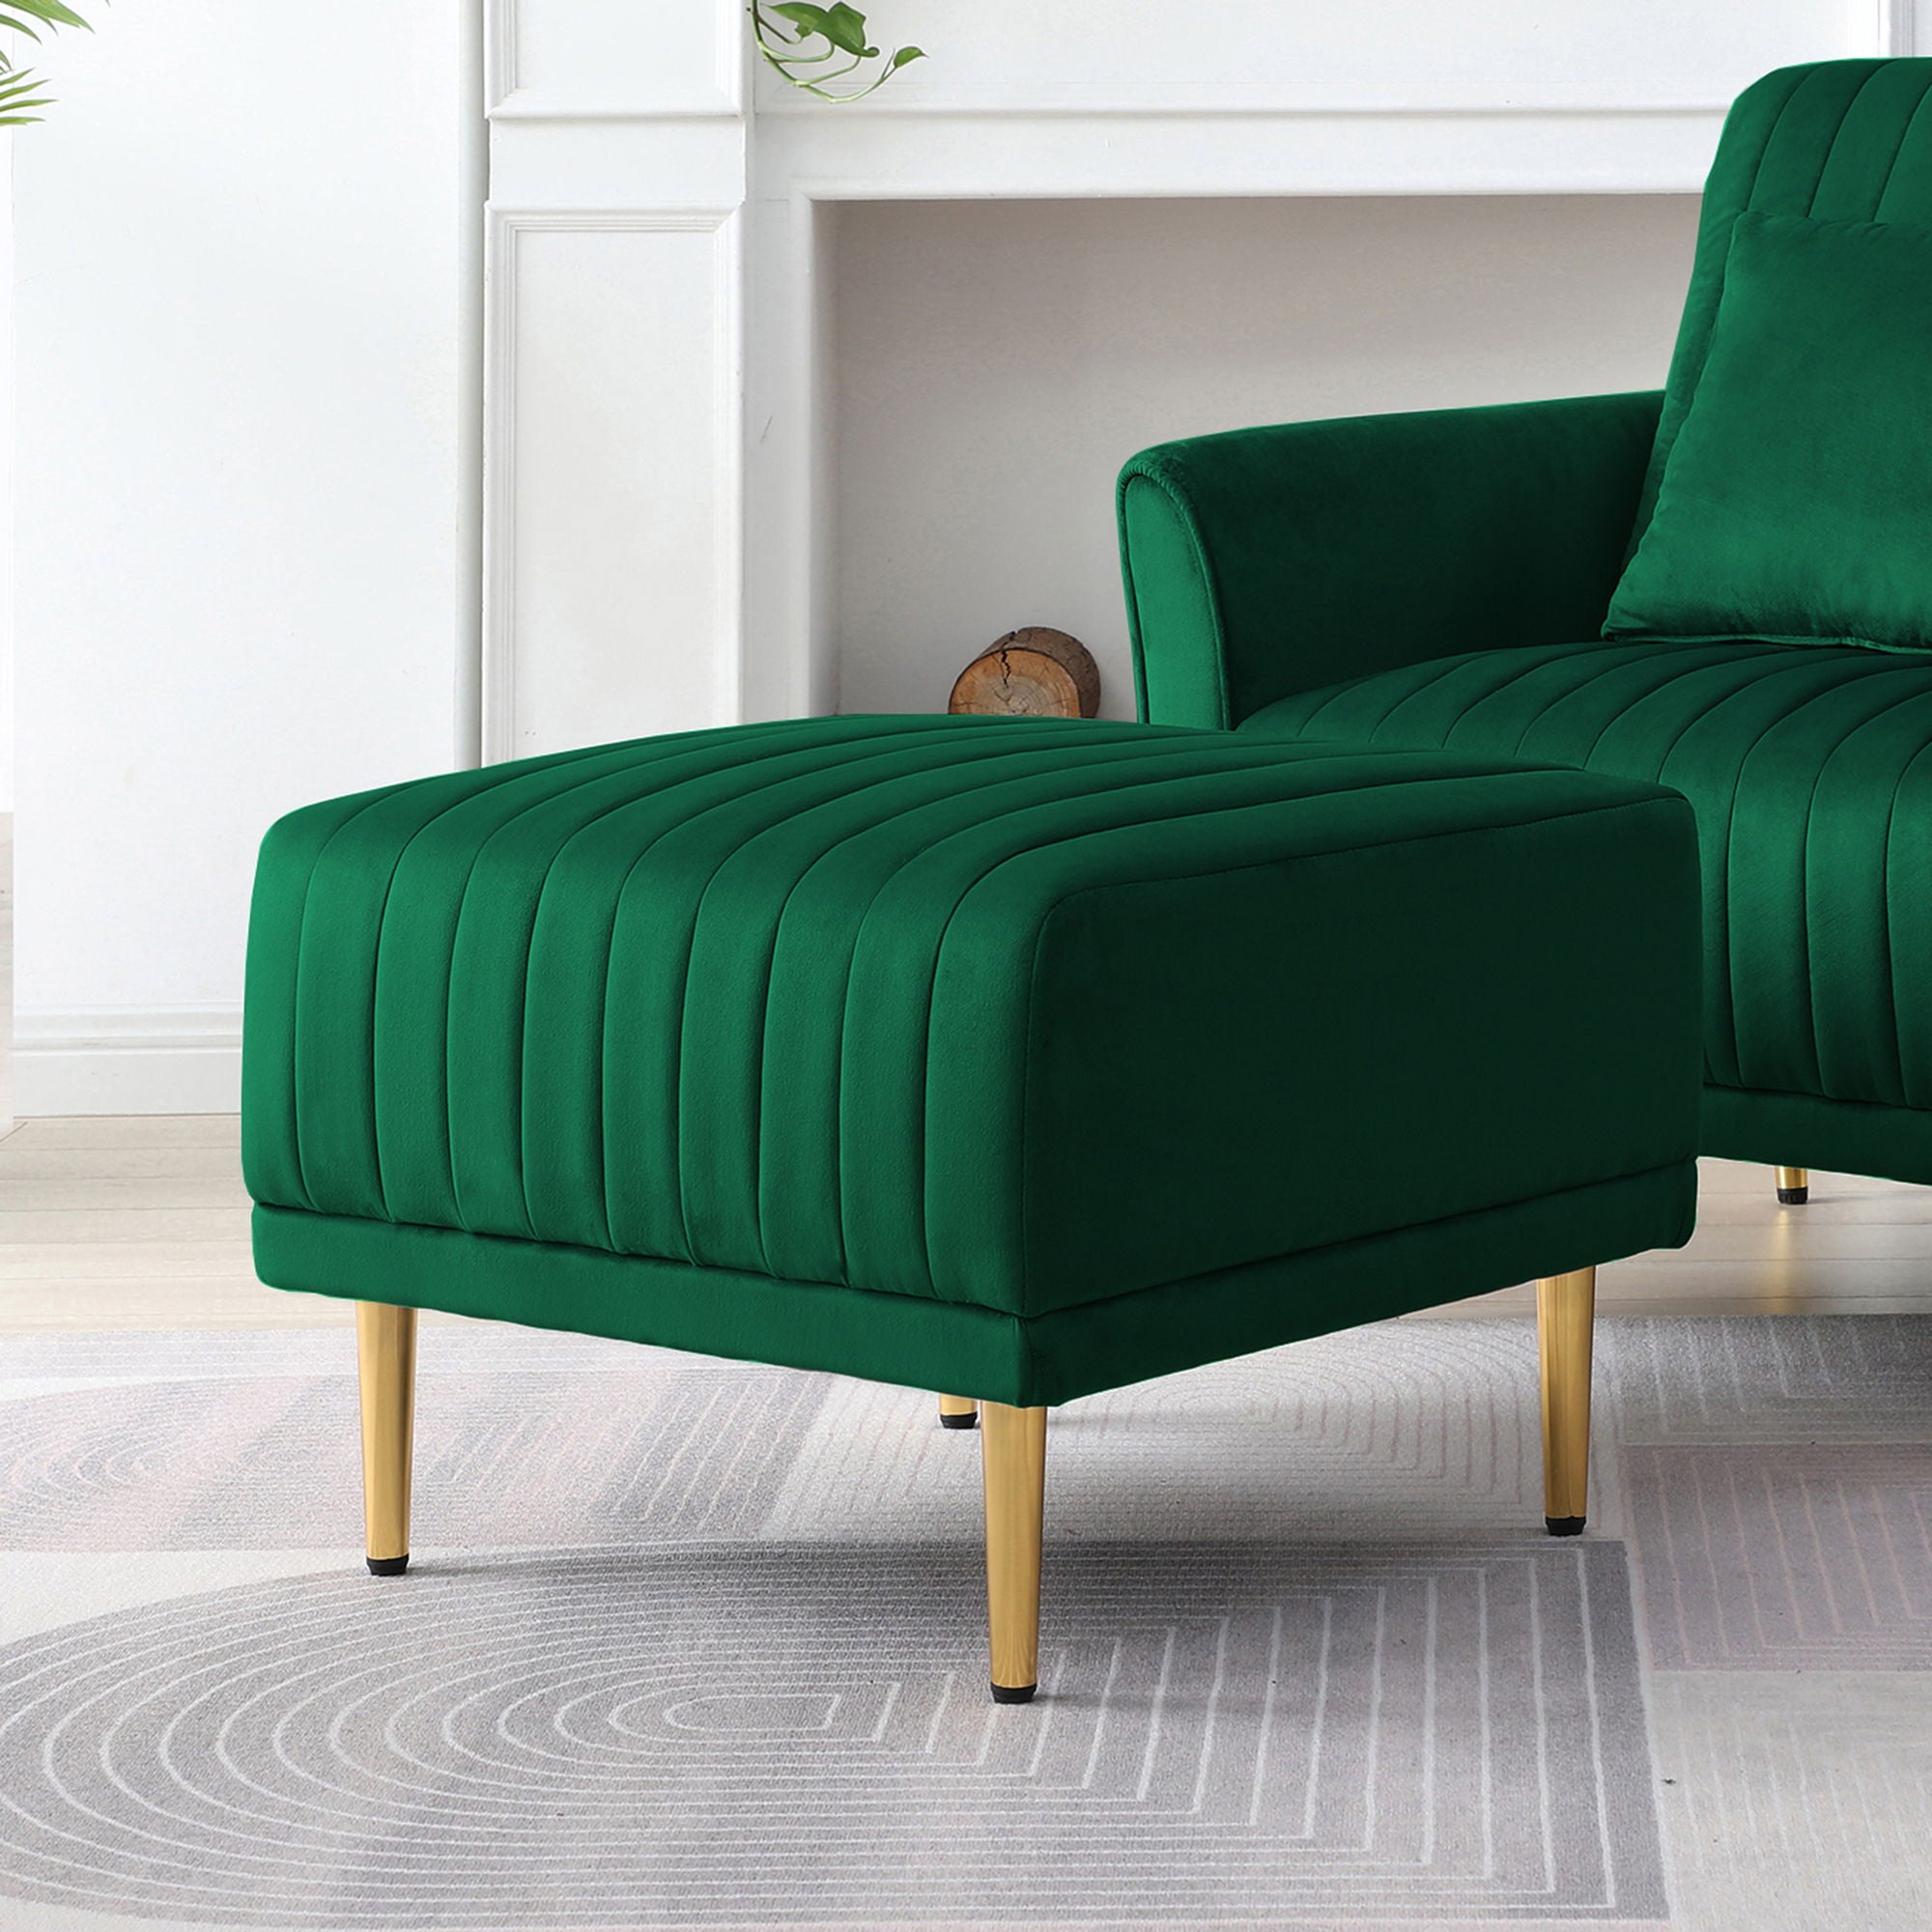 Ottoman Bench For Big Sofas Or Living Room Sofas - Green Velvet